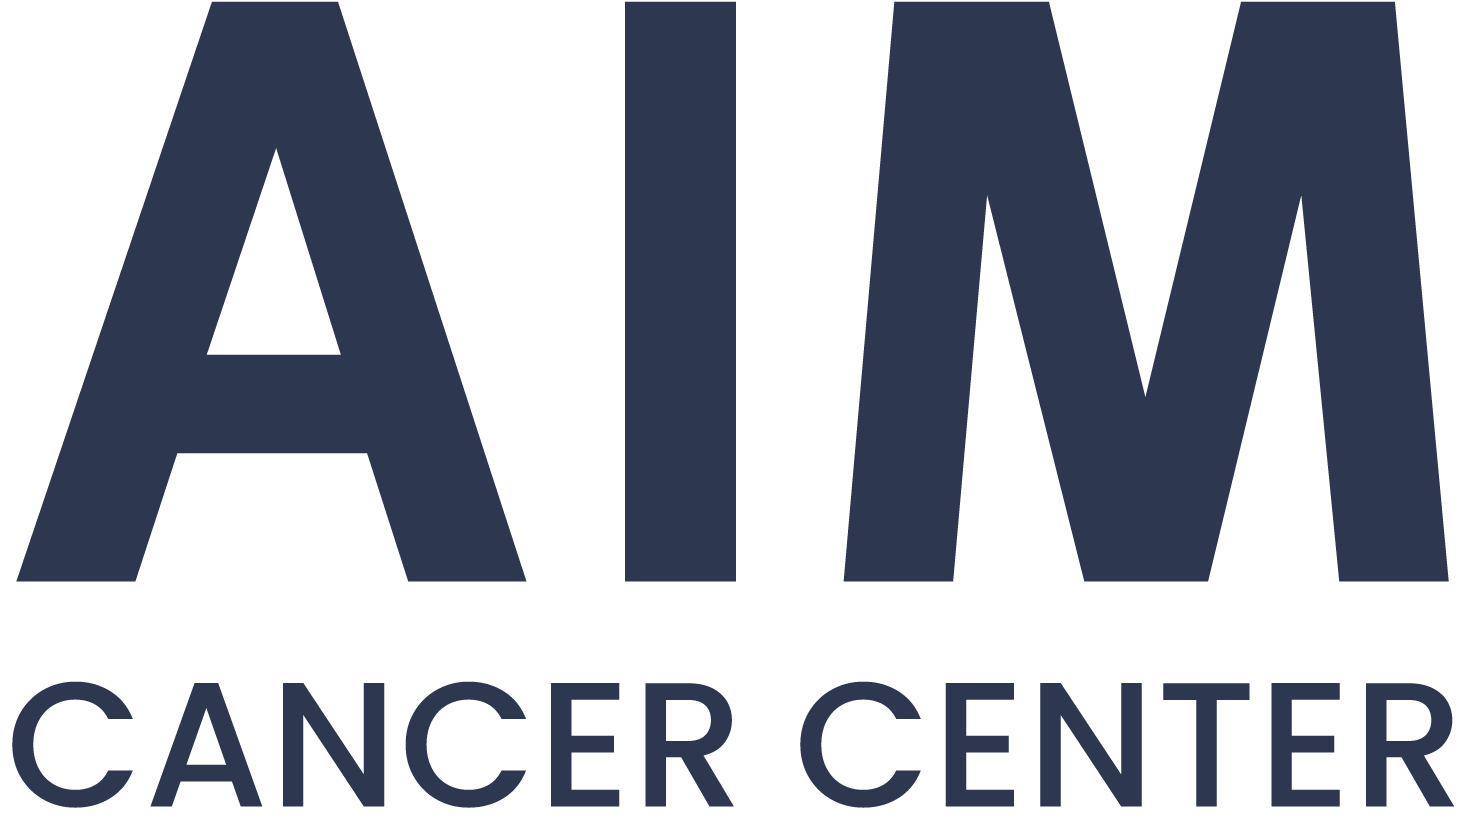 aim cancer centeroriginal Aim Cancer Center - Oncologia, Cancro, Exercício, Nutrição